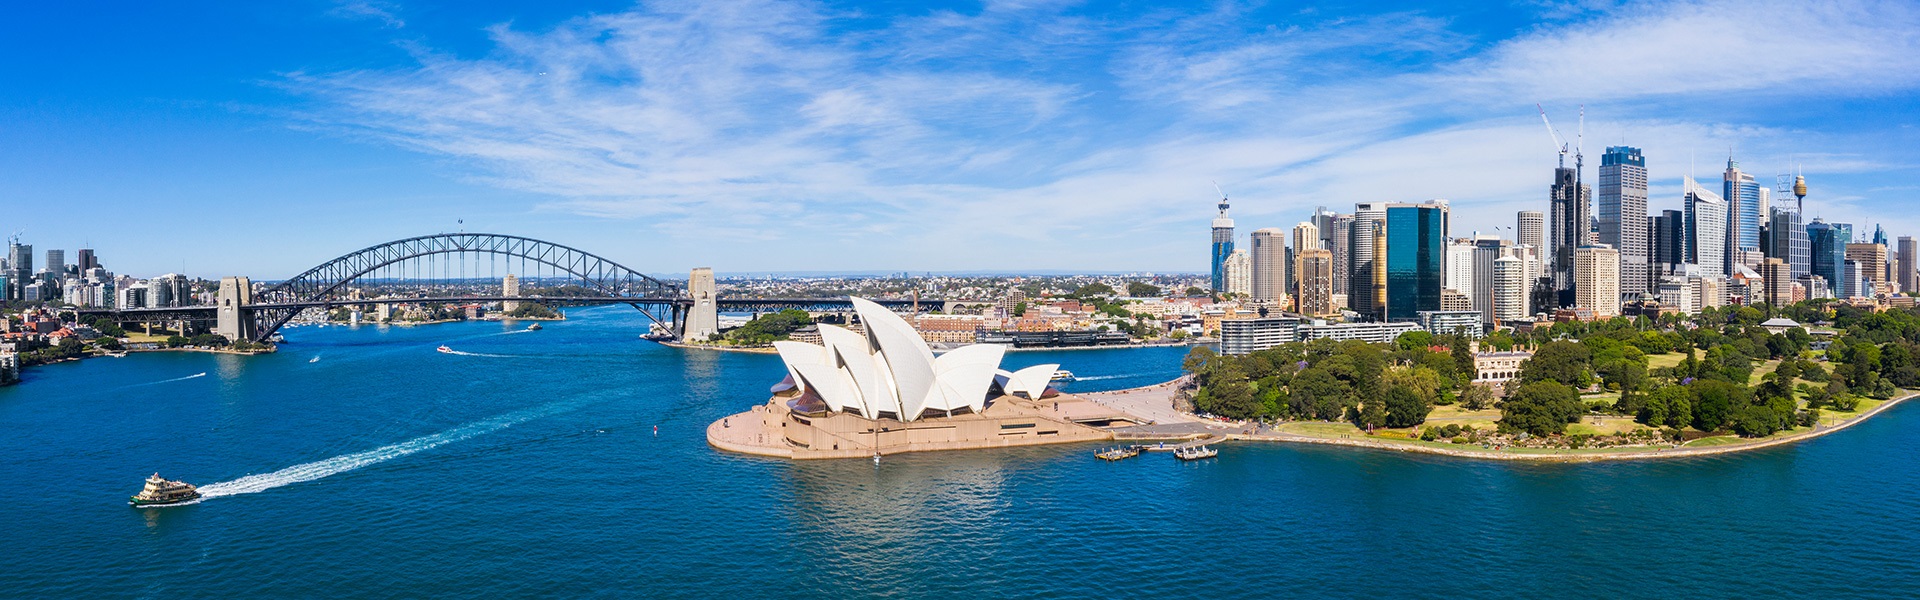 Recorre Australia para vivir una experiencia de verano inolvidable 
Sydney desde $112